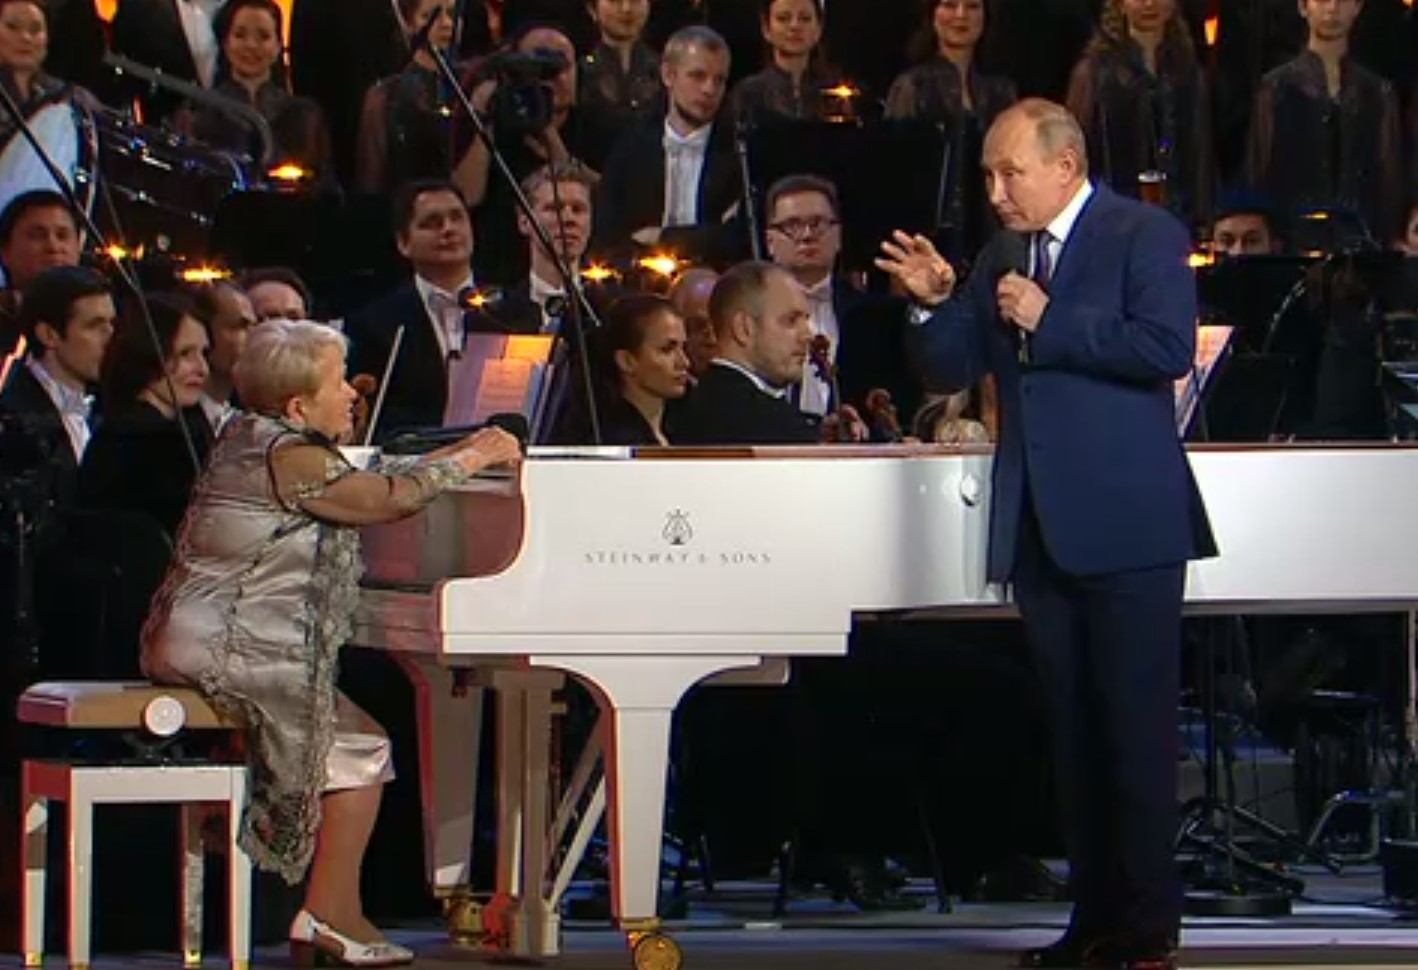 Владимир Путин поздравил Александру Пахмутову с юбилеем